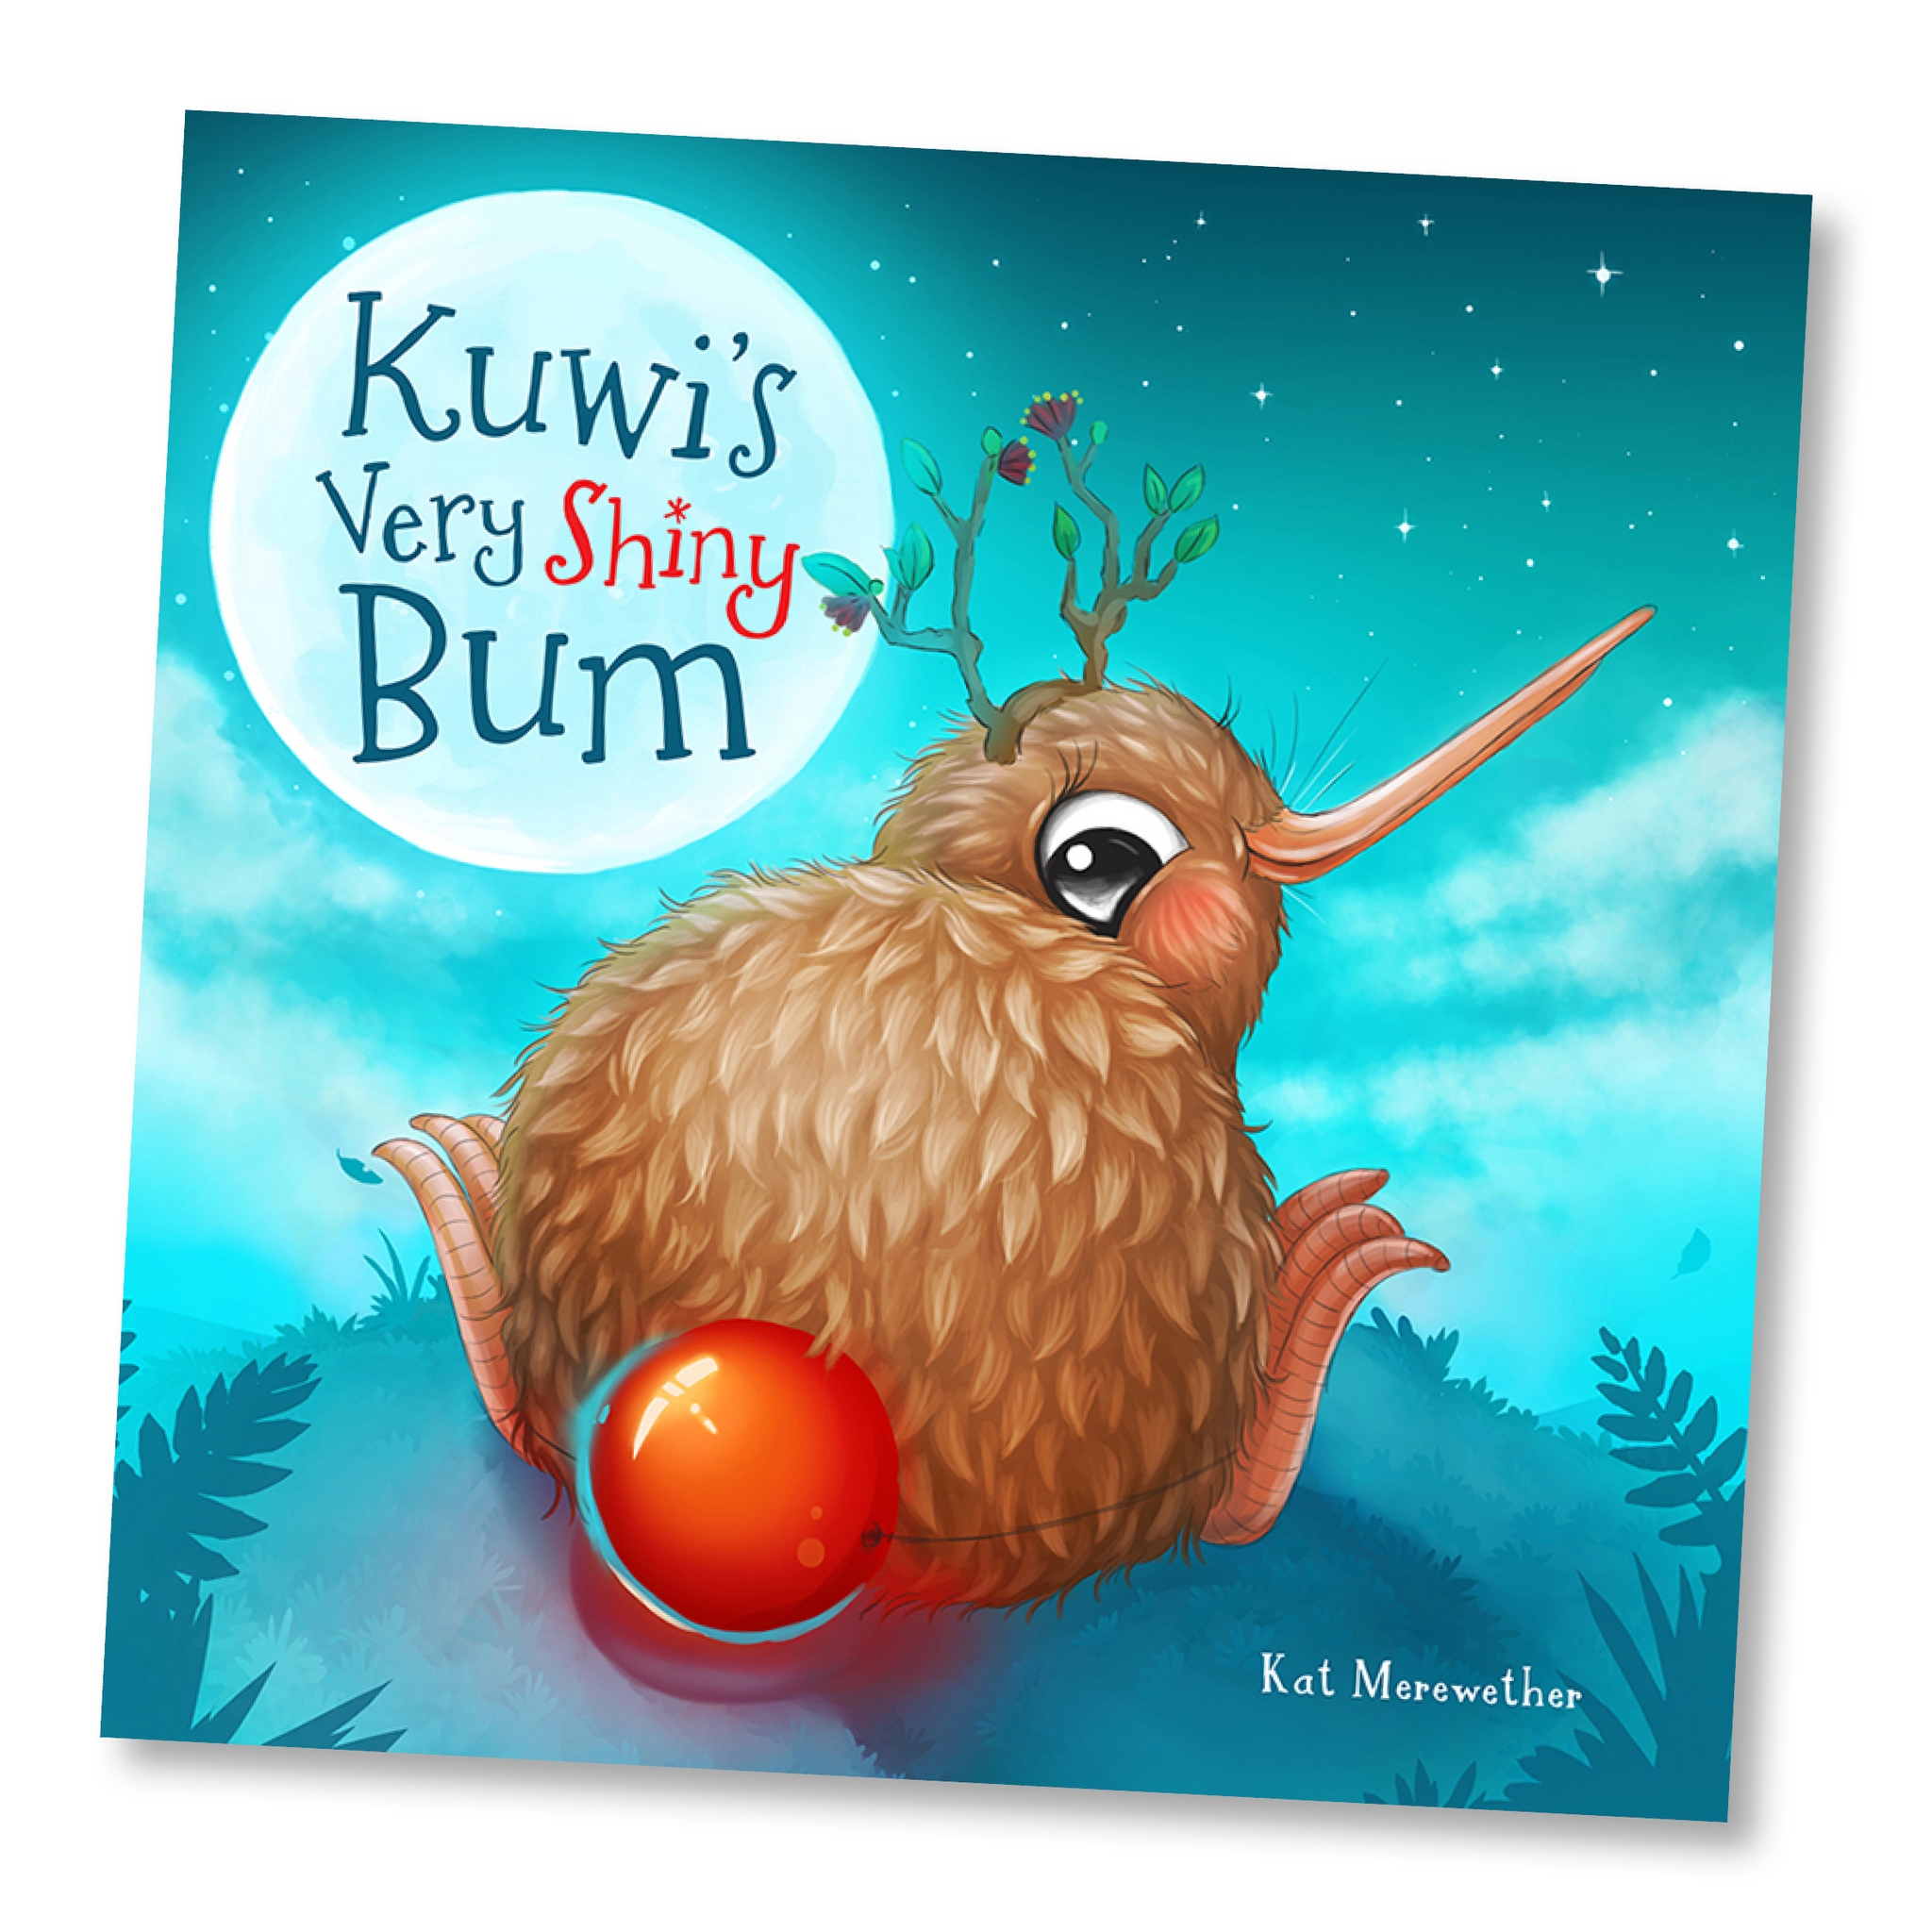 Kuwi's Very Shiny Bum